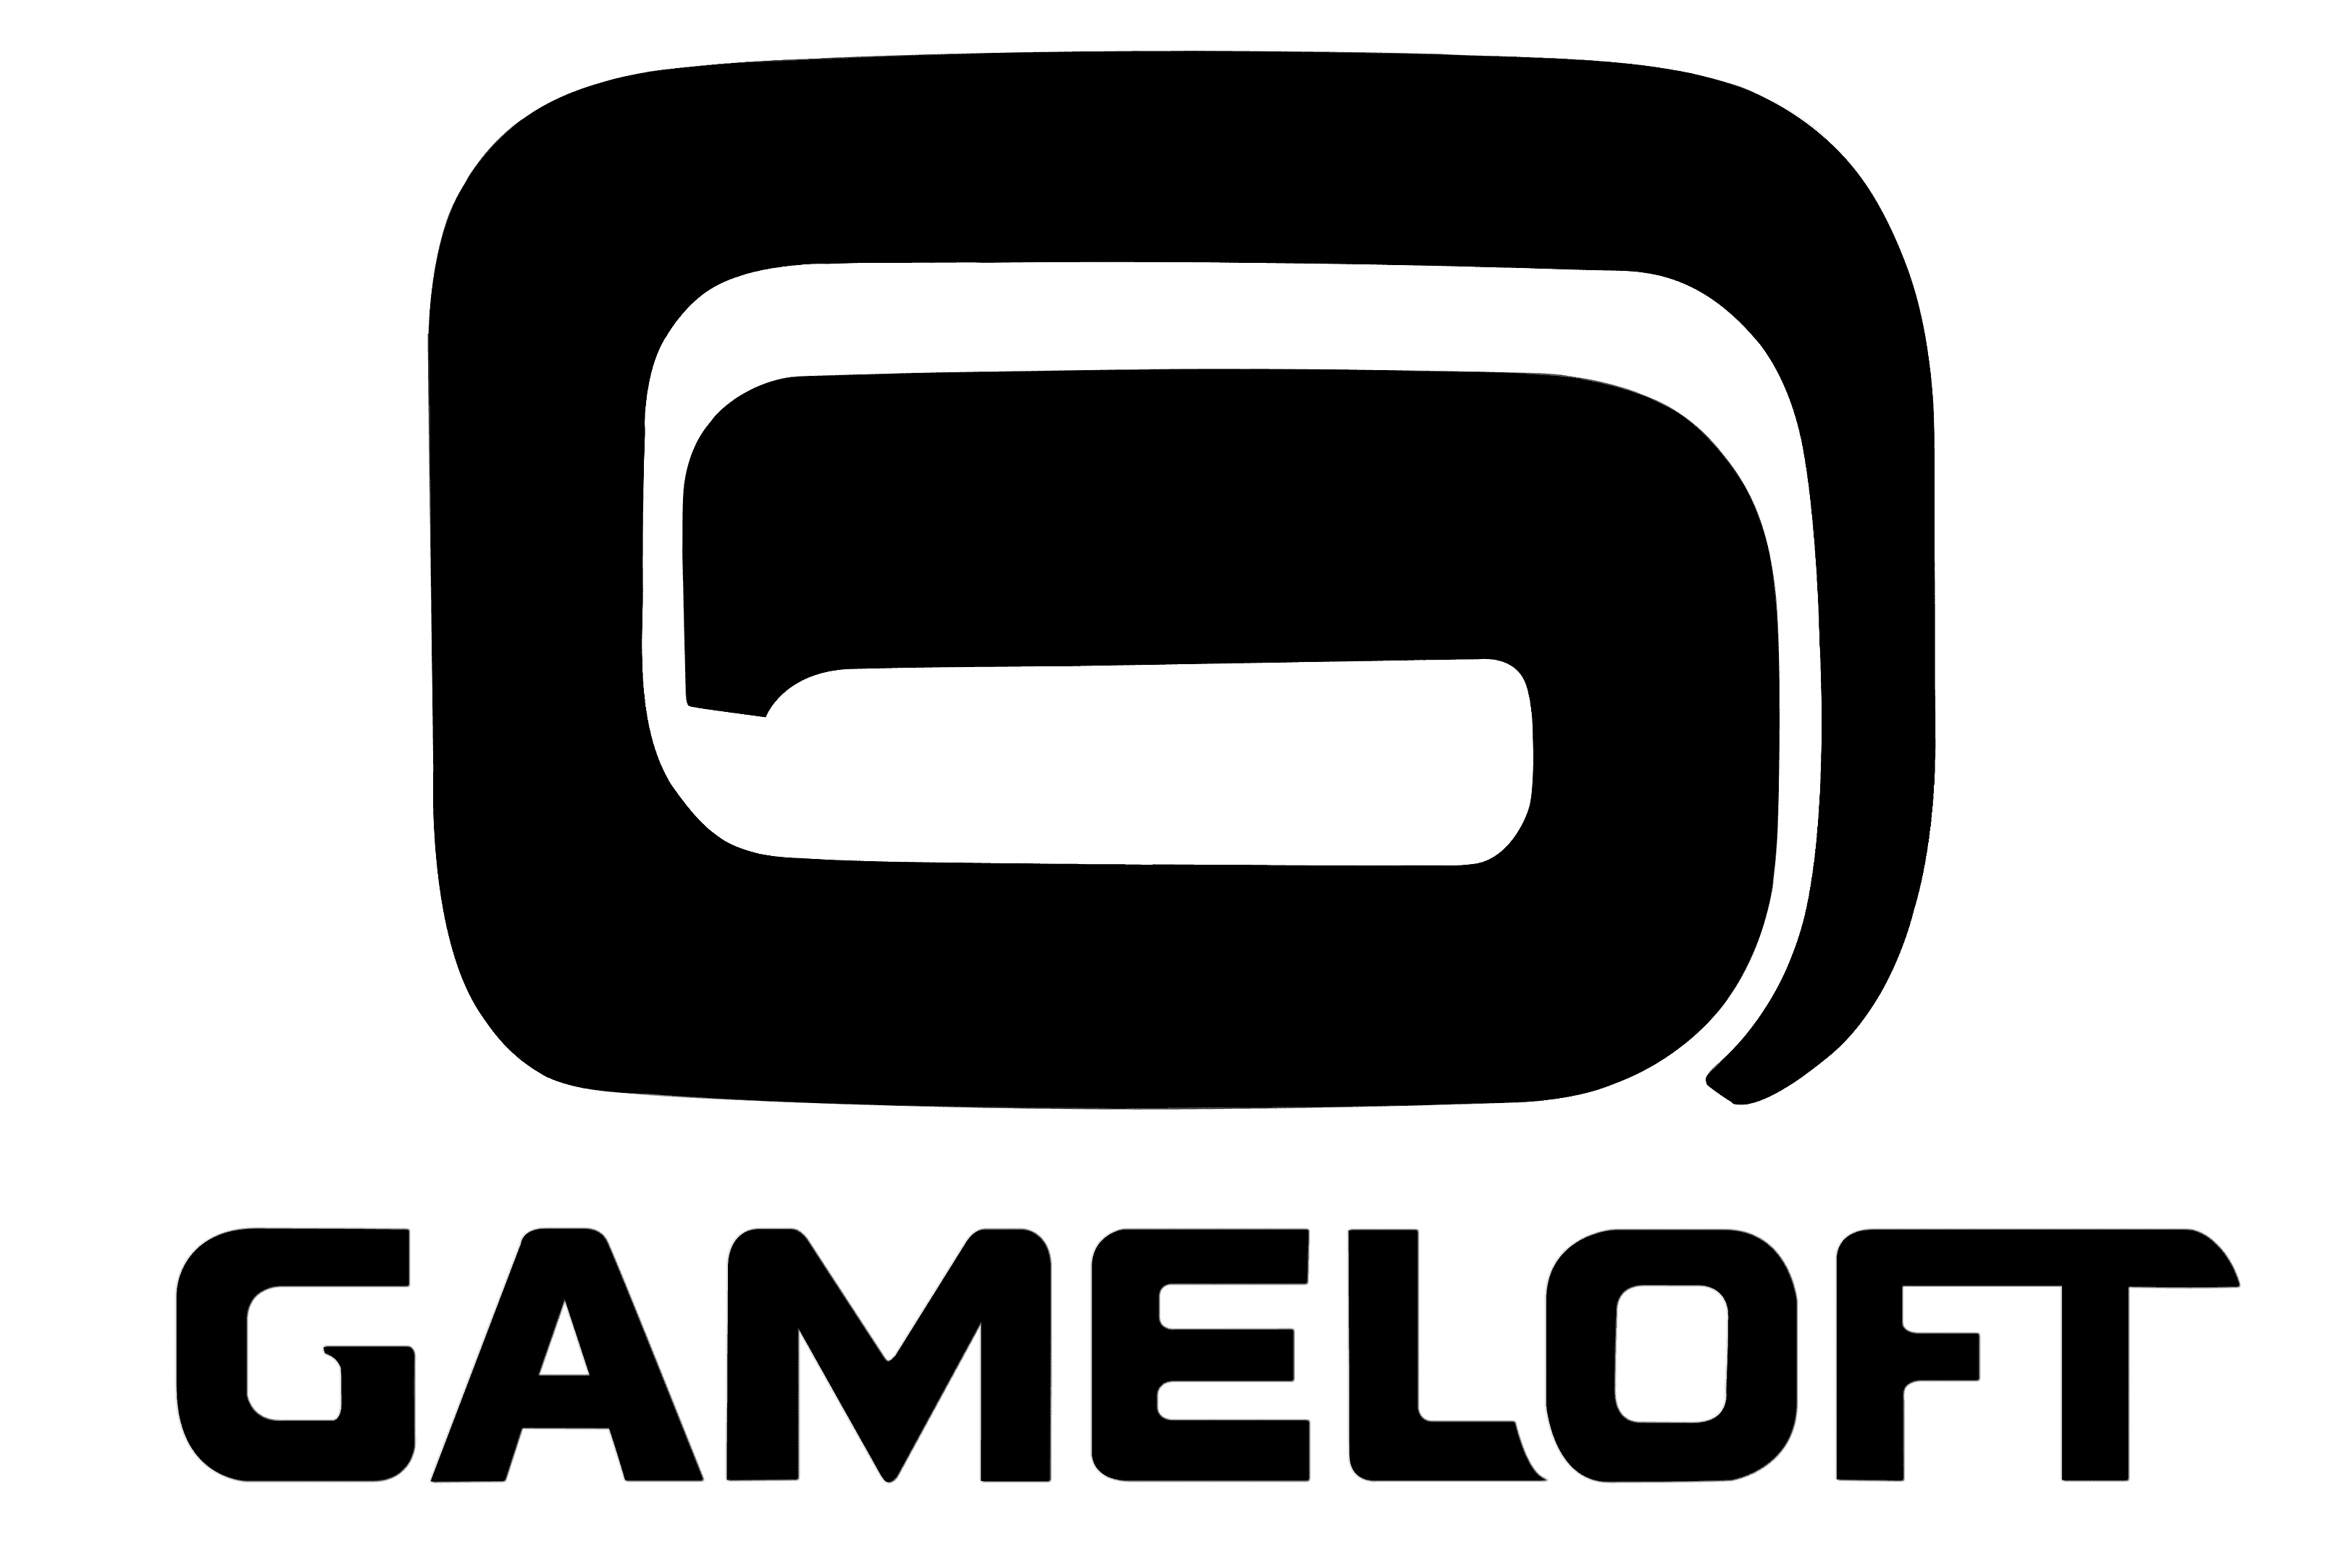 Gameloft tuyển dụng - Tìm việc mới nhất, lương thưởng hấp dẫn.